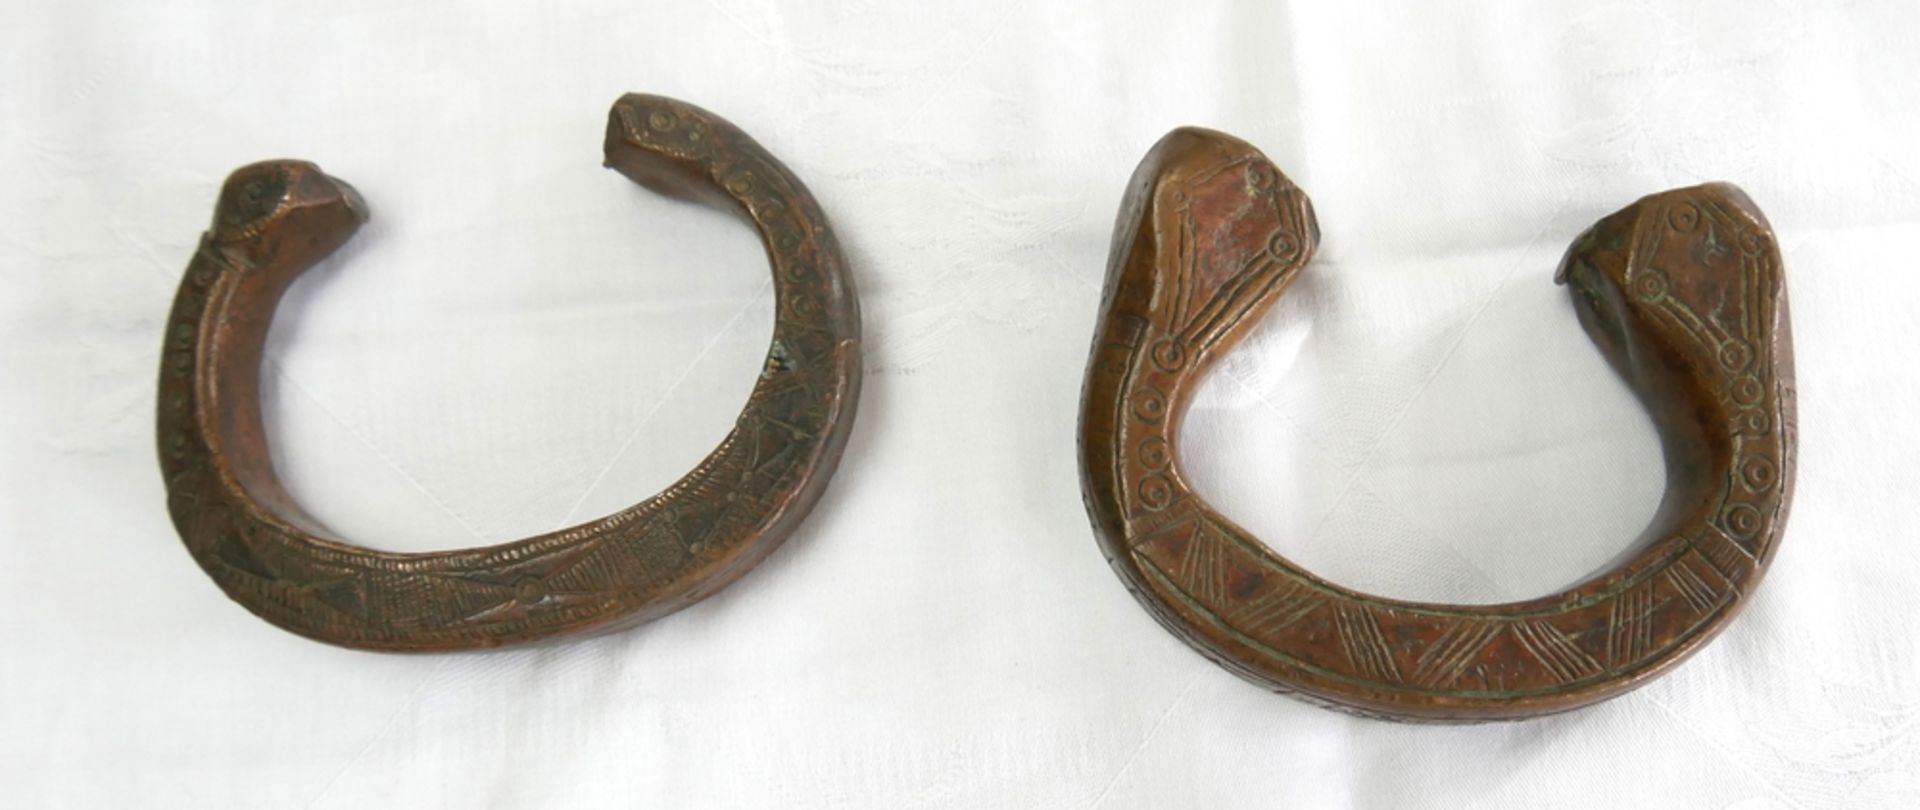 2 Manille sogenanntes Sklavengeld aus Bronze. In Form eines Armreifs mit einem Knauf auf beiden